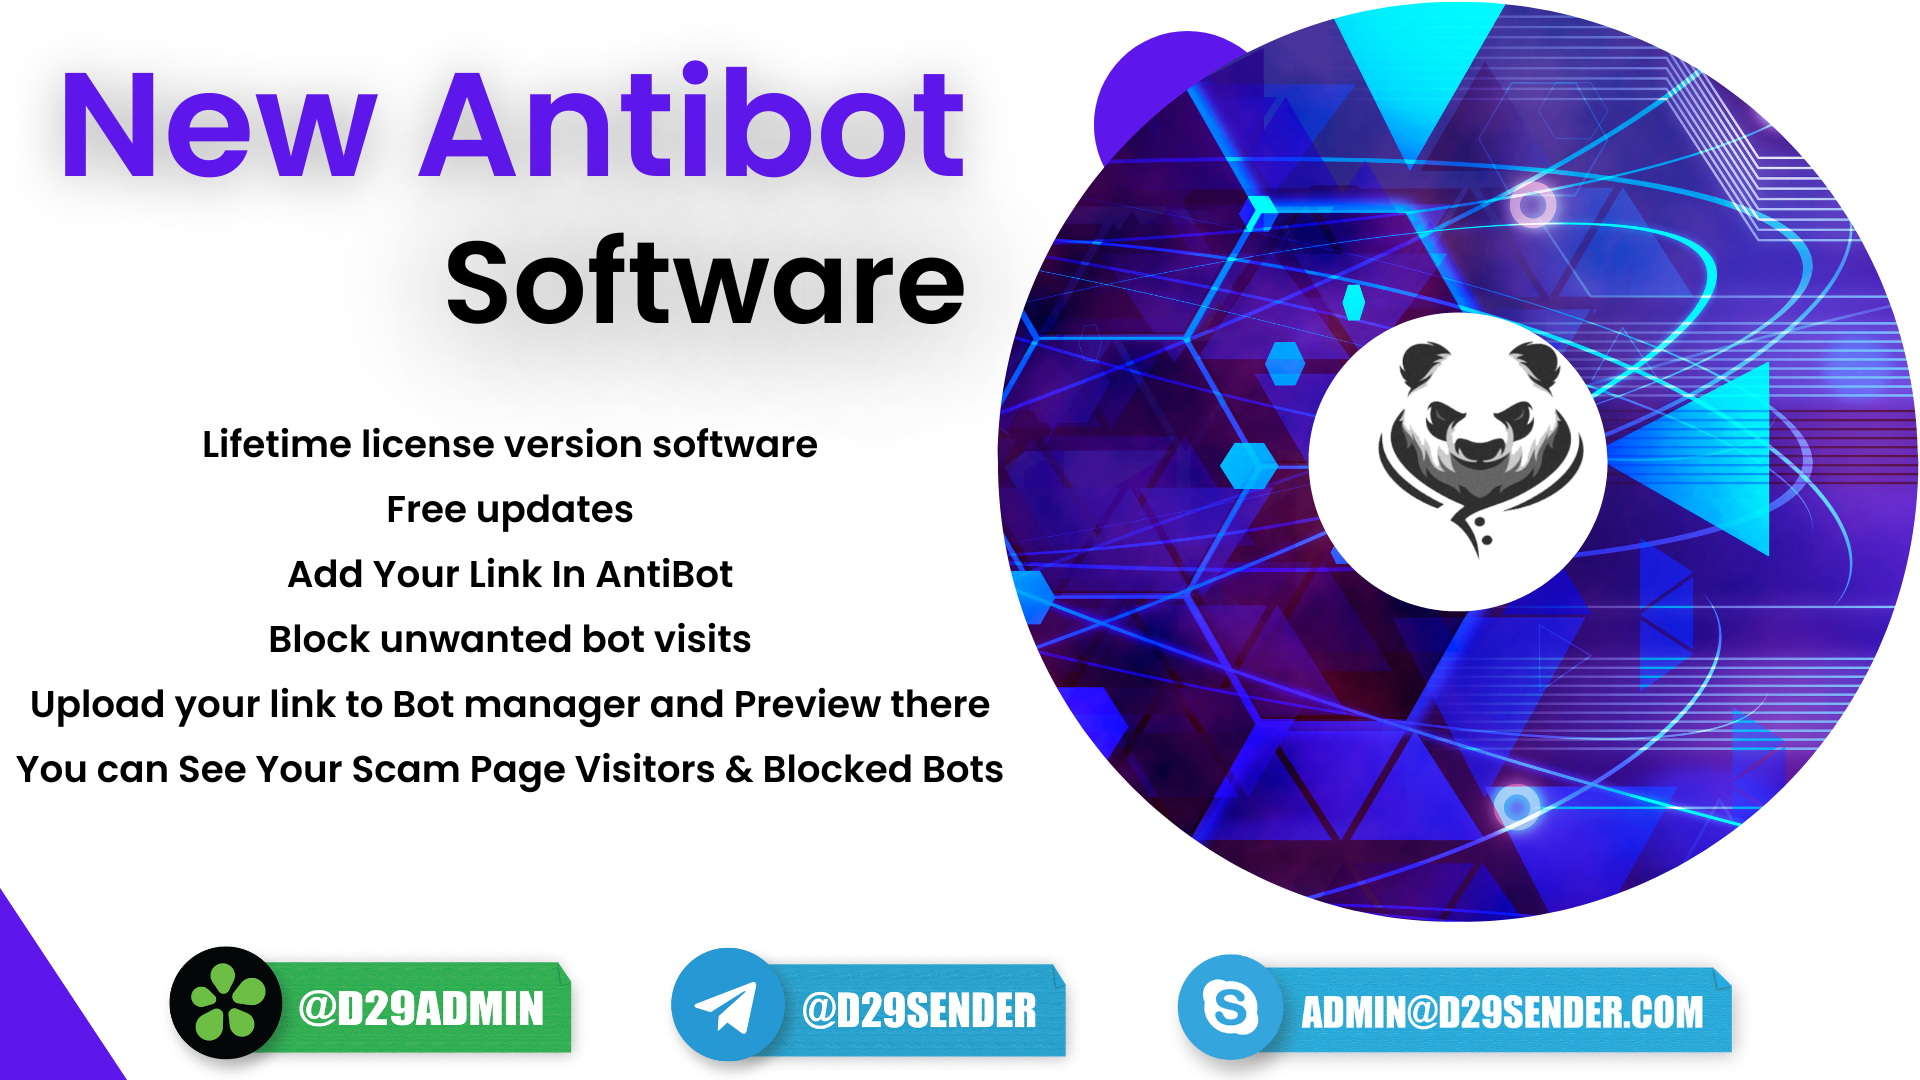 Antibot software